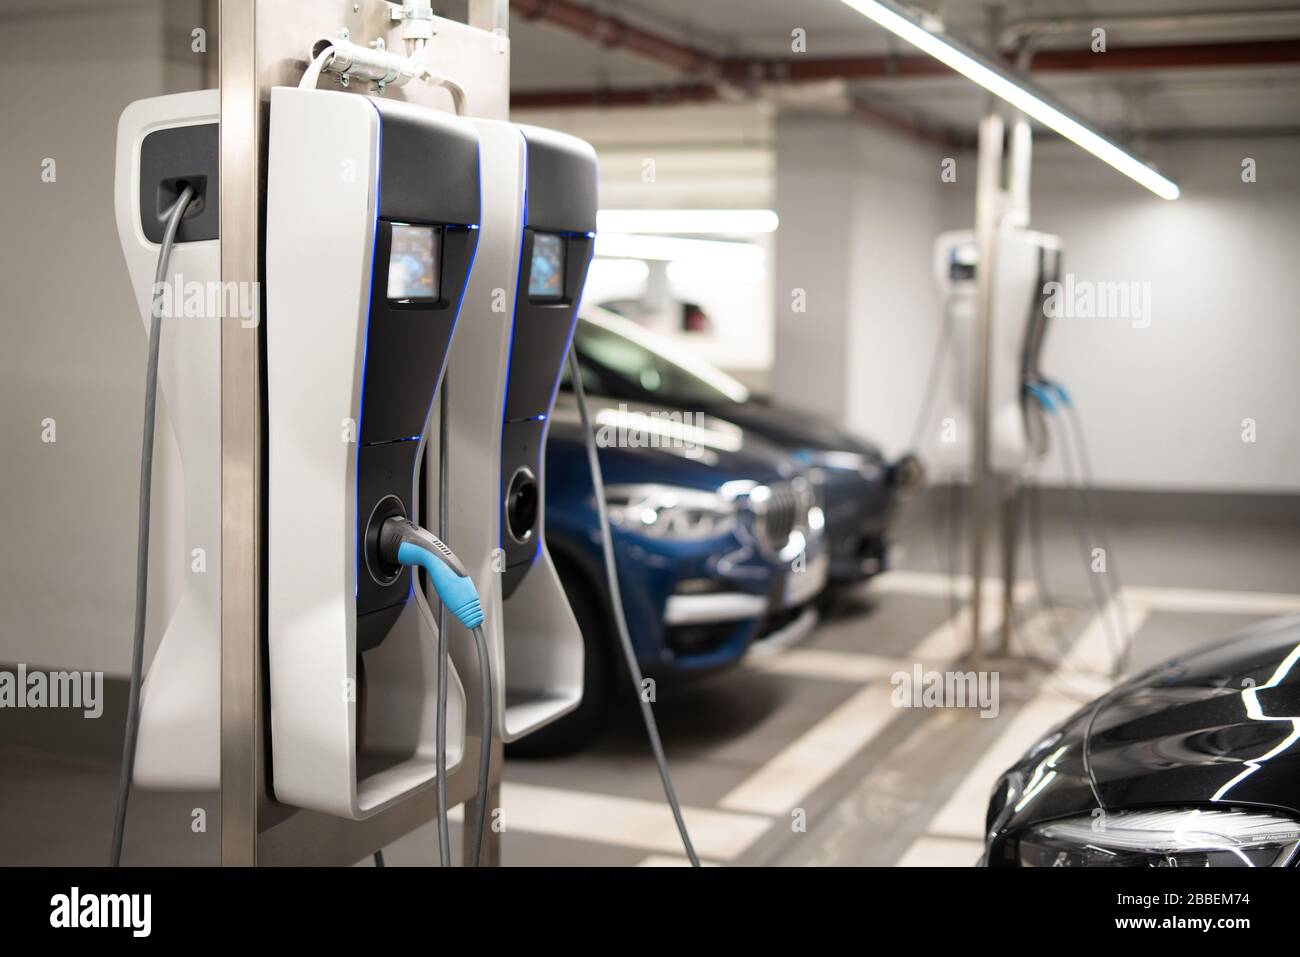 Voitures électriques à une station de charge dans un parking souterrain Banque D'Images